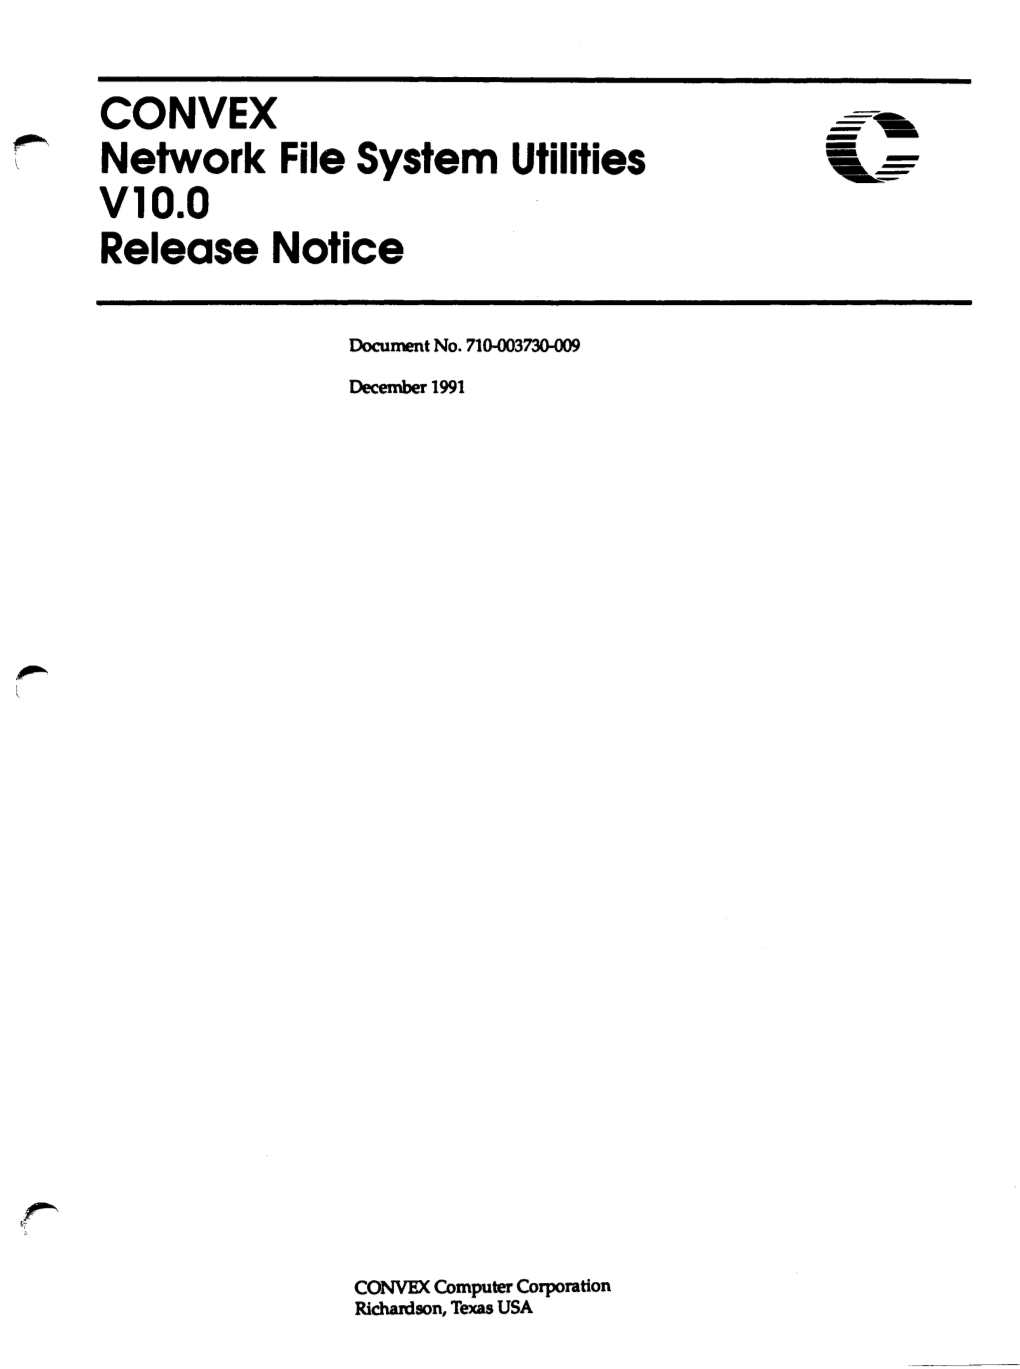 NFS Utilities V10.0 Release Notice